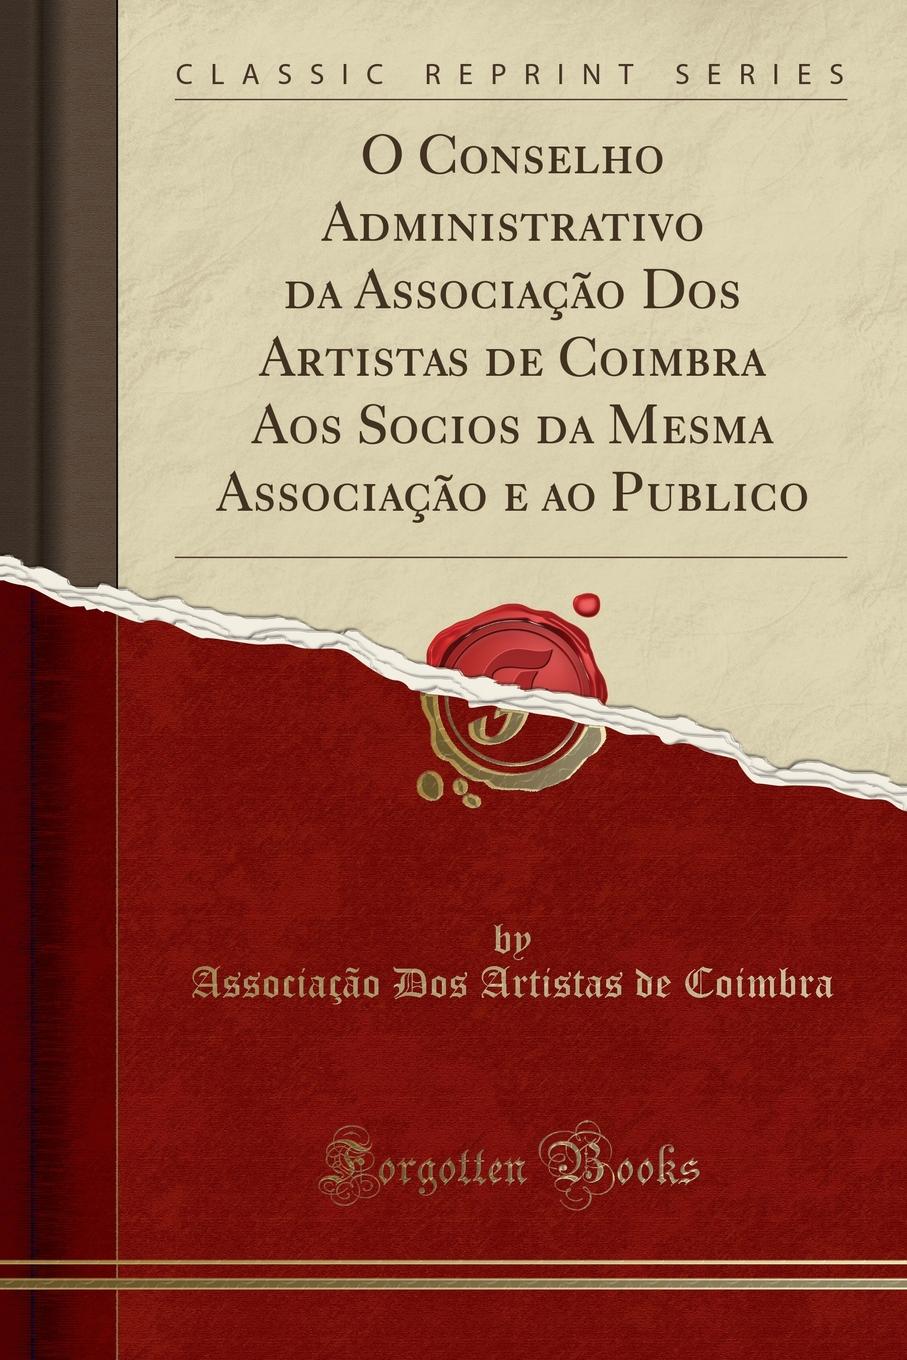 фото O Conselho Administrativo da Associacao Dos Artistas de Coimbra Aos Socios da Mesma Associacao e ao Publico (Classic Reprint)